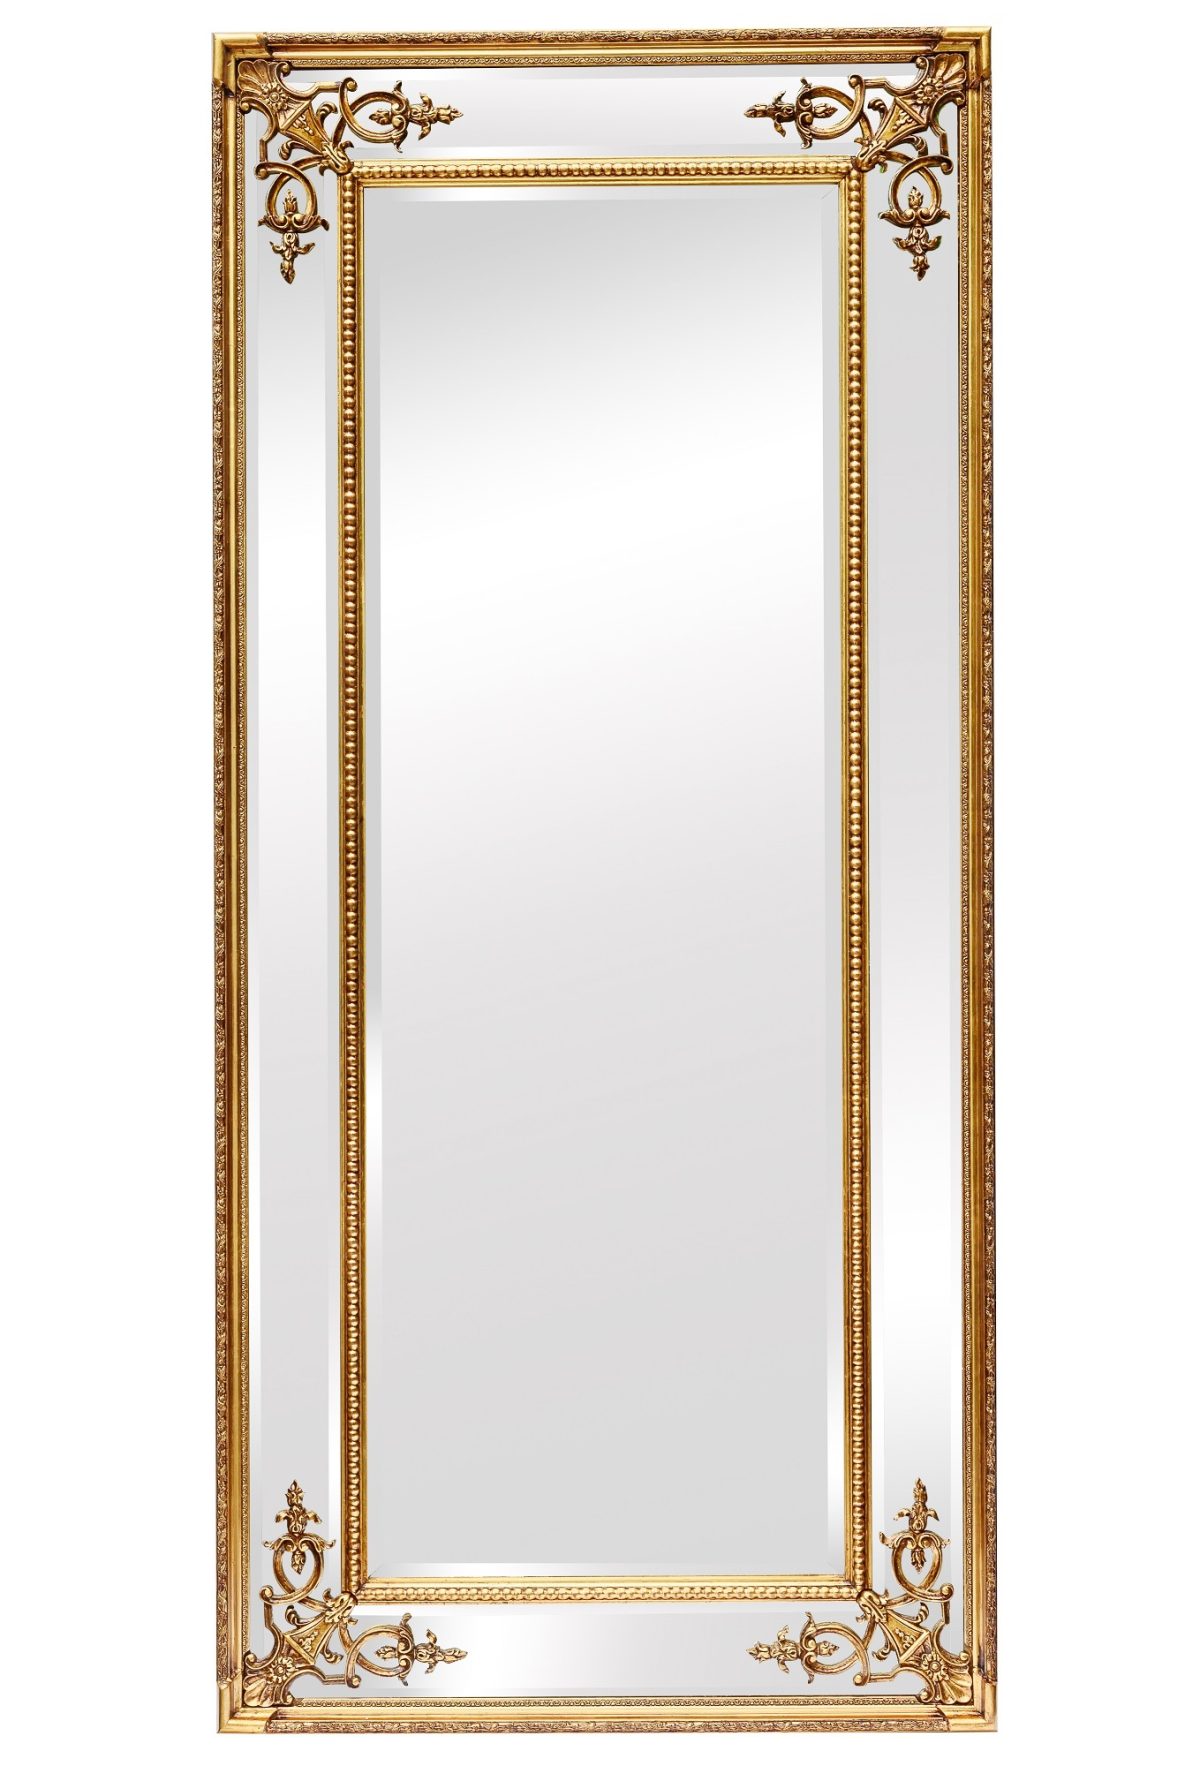 Напольное зеркало в раме Roberto Gold фото и цена, купить